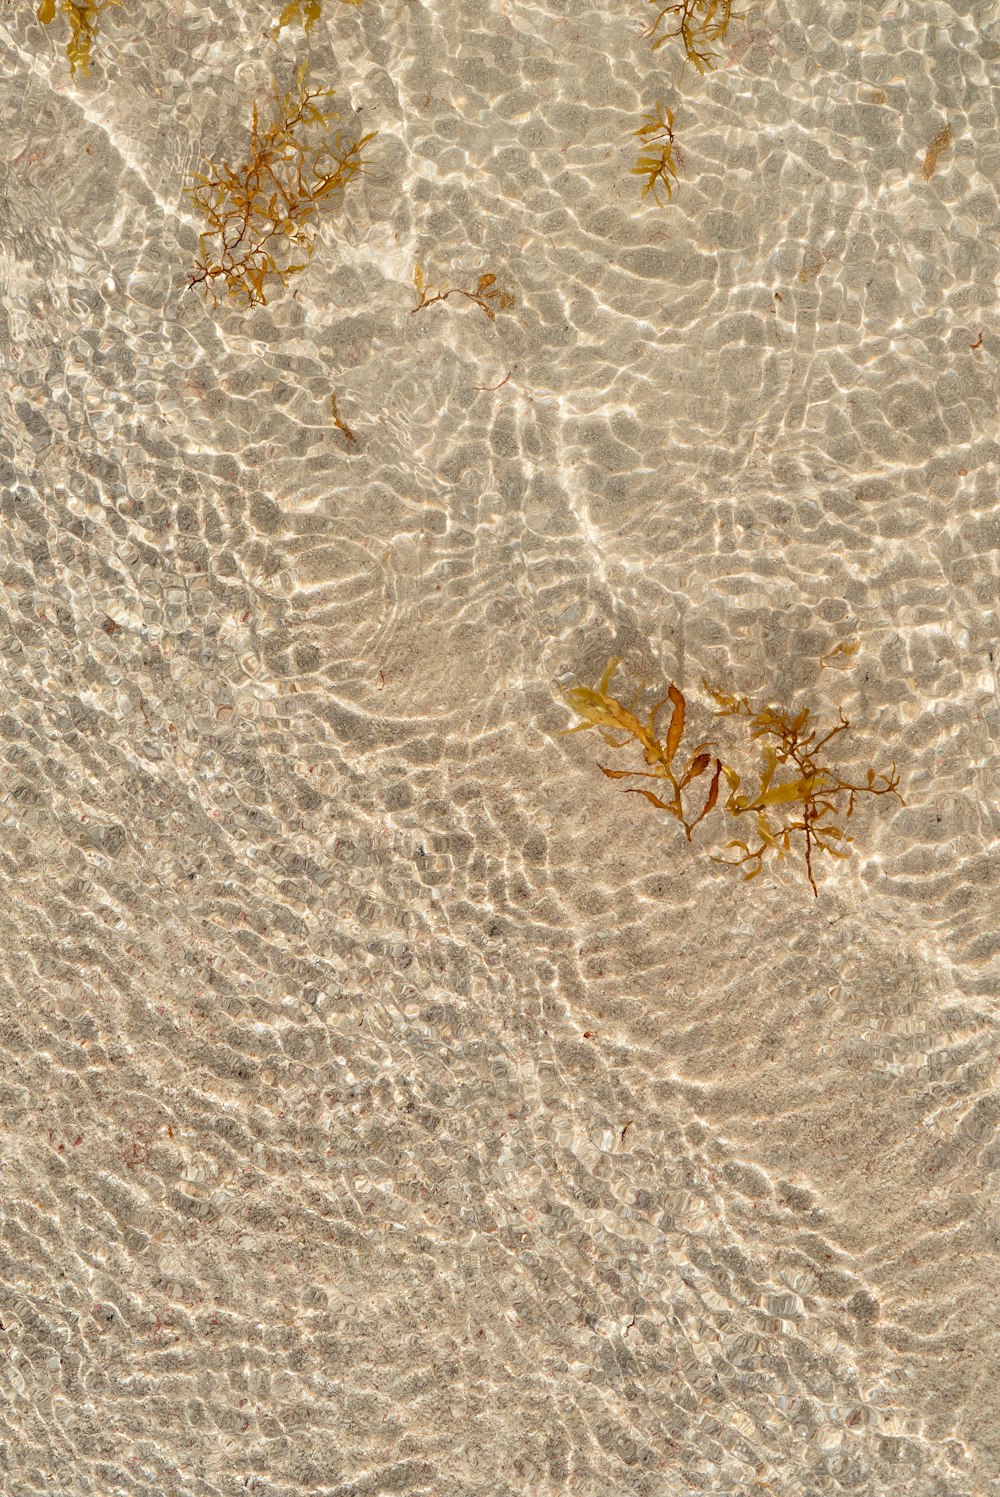 Un groupe d’algues flottant au sommet d’une plage de sable